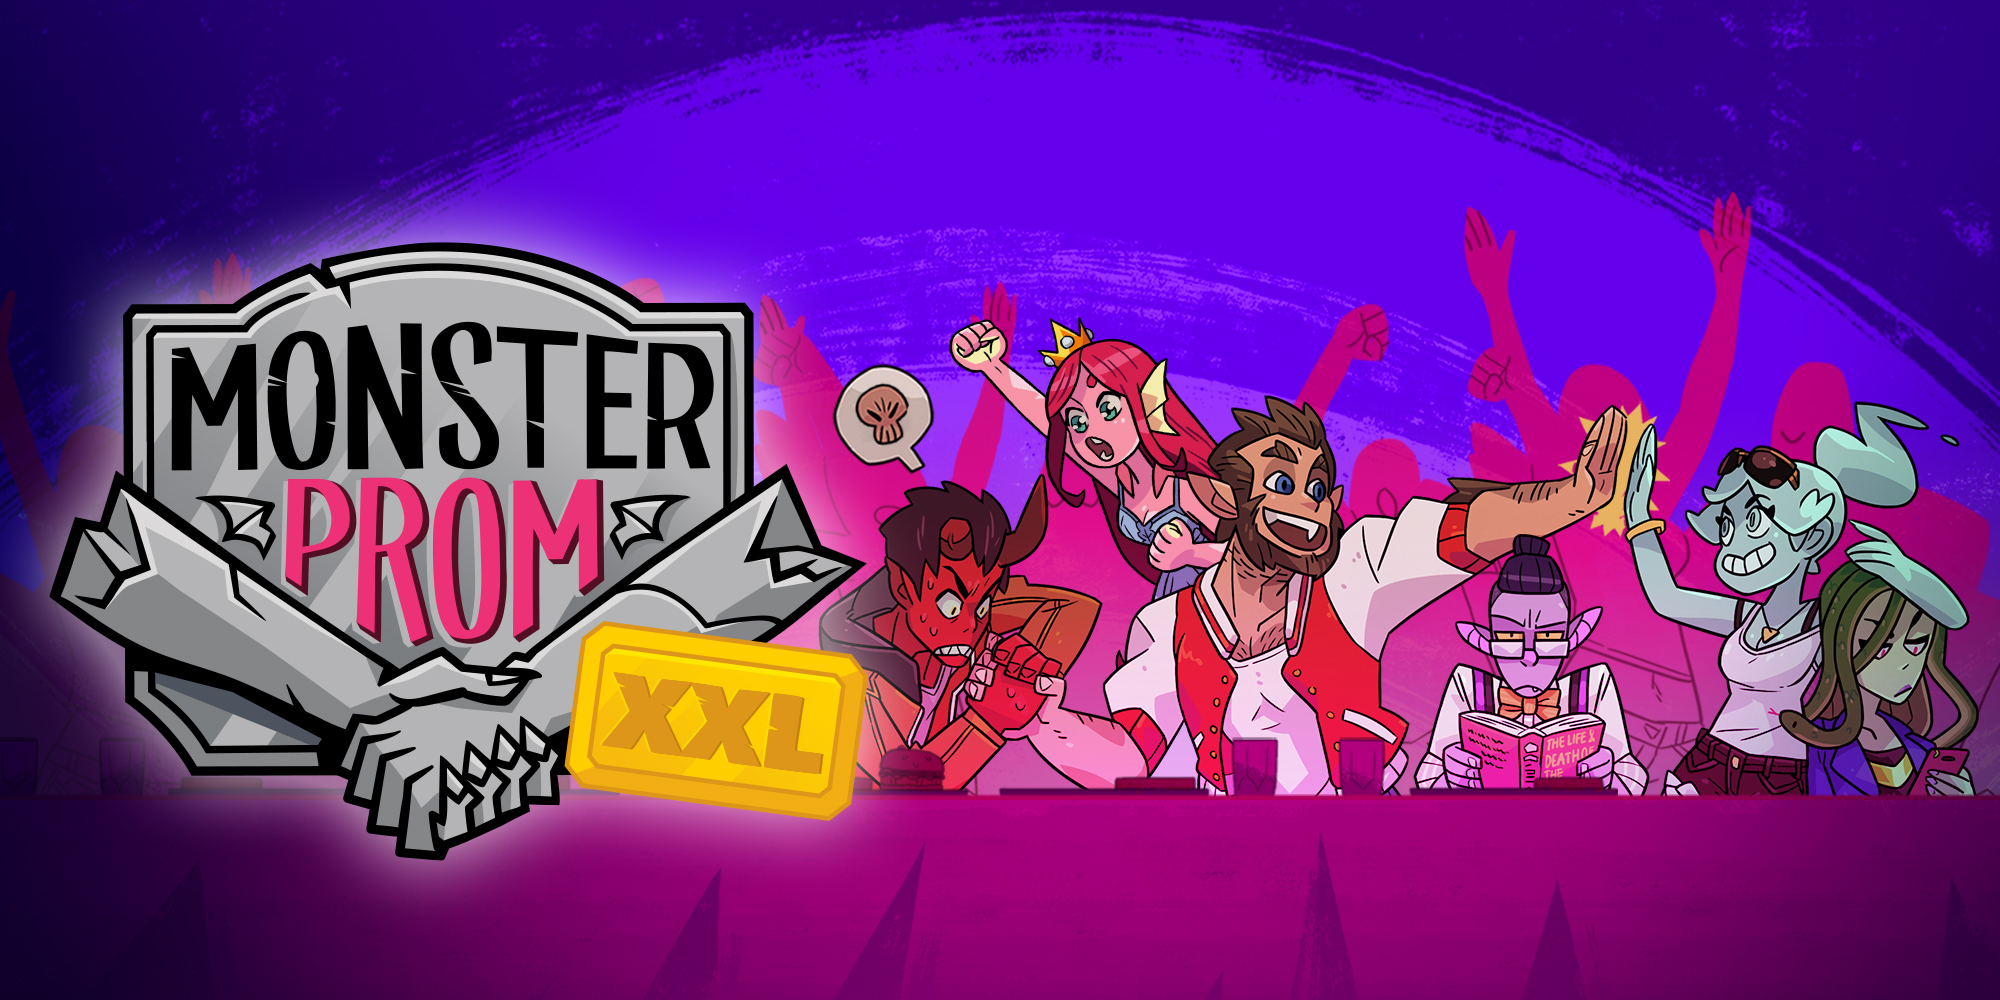 Monster Prom: XXL | Programas descargables Nintendo Switch | Juegos | Nintendo